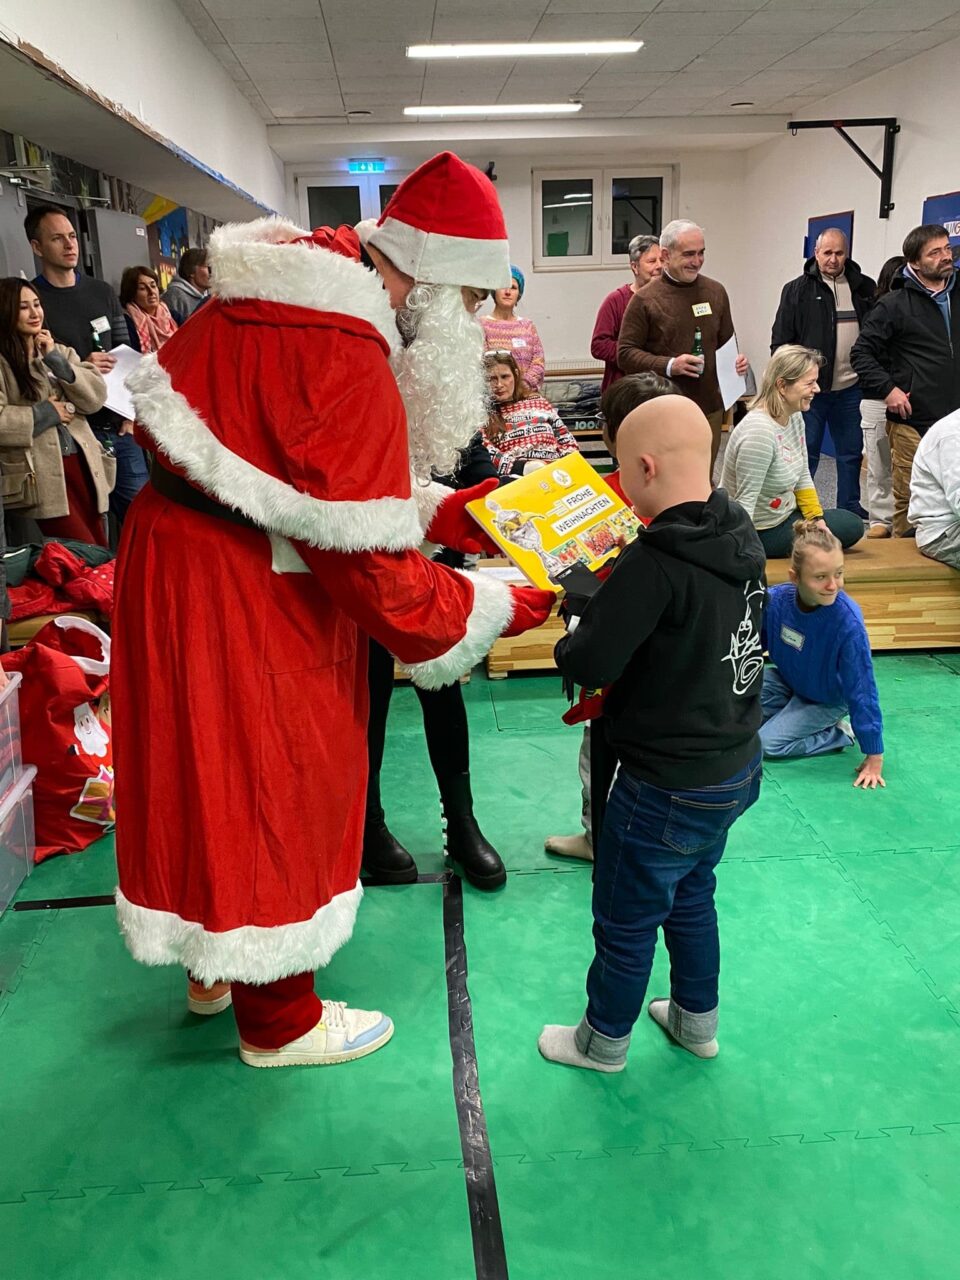 Ein Weihnachtsmann übergibt einem Kind ein Geschenk. Der Raum ist eine Turnhalle. Die anderen Kinder und ihre Eltern stehen dahinter und schauen zu.